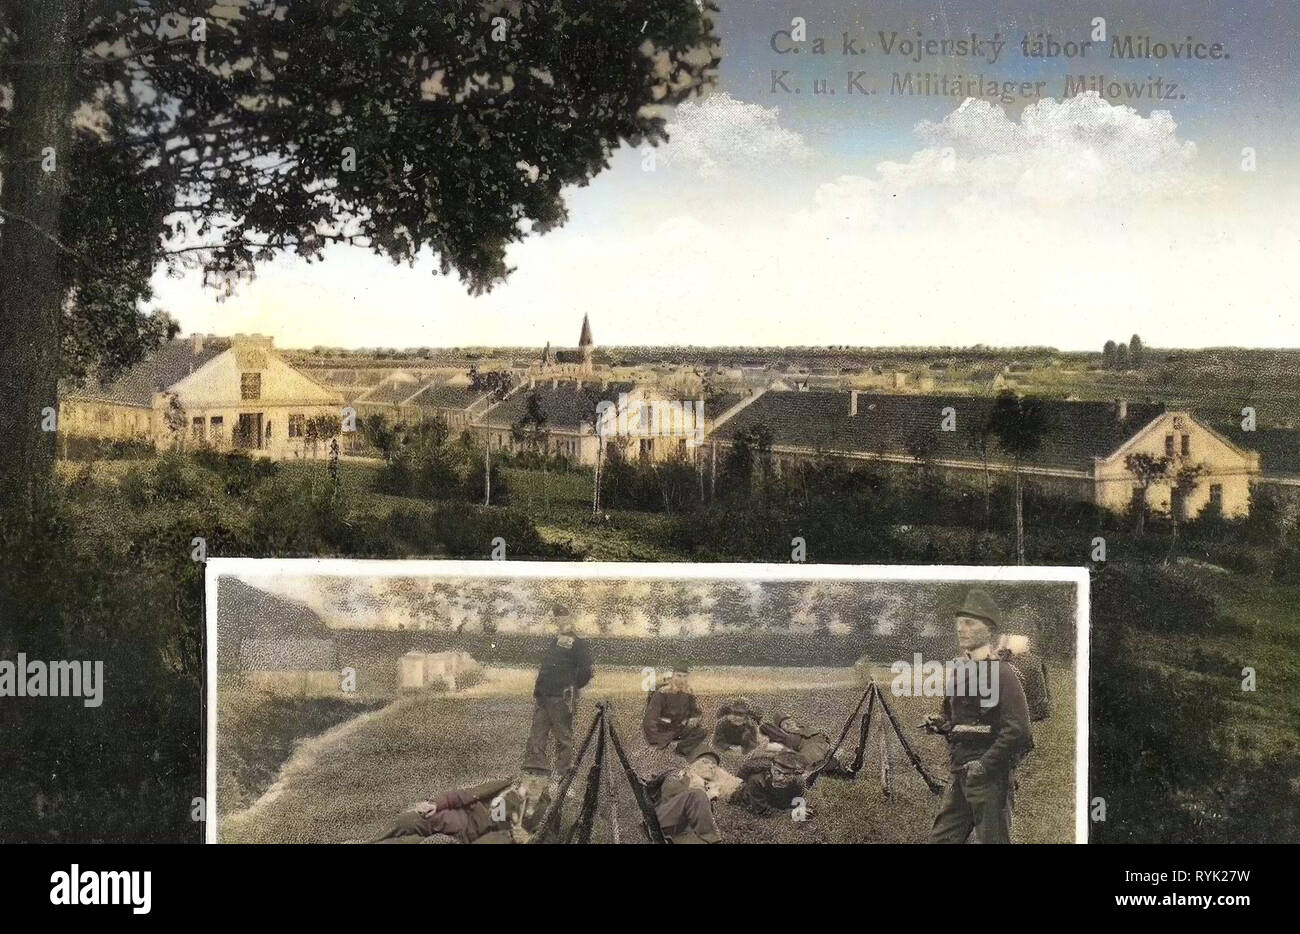 Infanterie Kaserne von Österreich-ungarn, österreichisch-ungarischen Armee, Multiview Postkarten, 1914, Mittelböhmische Region, Milowitz, Militärlager Stockfoto